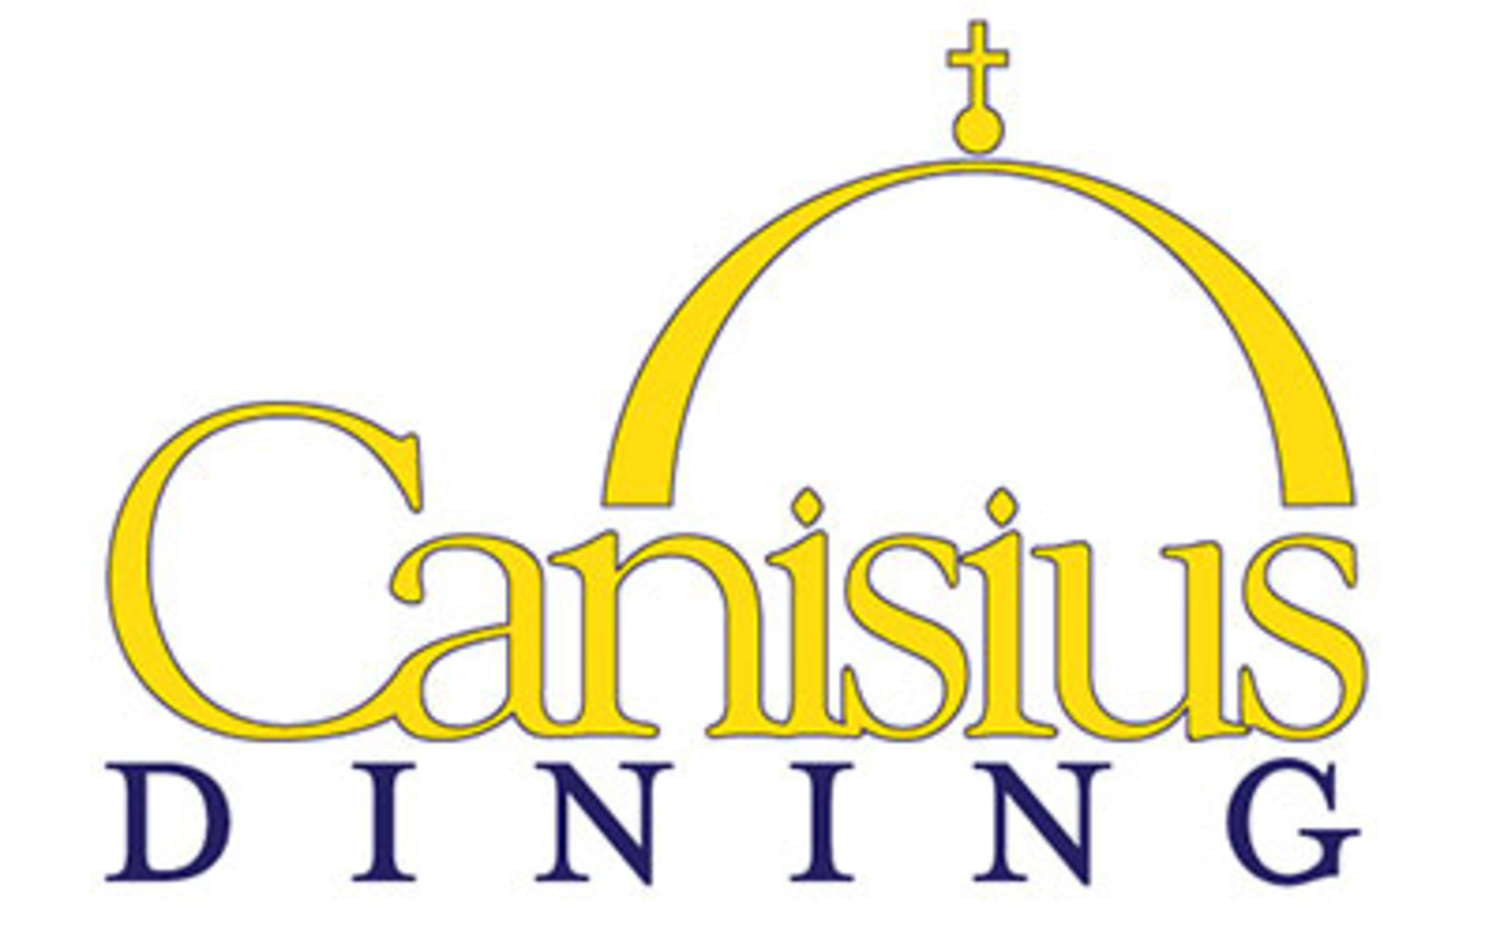 Canisius dining logo